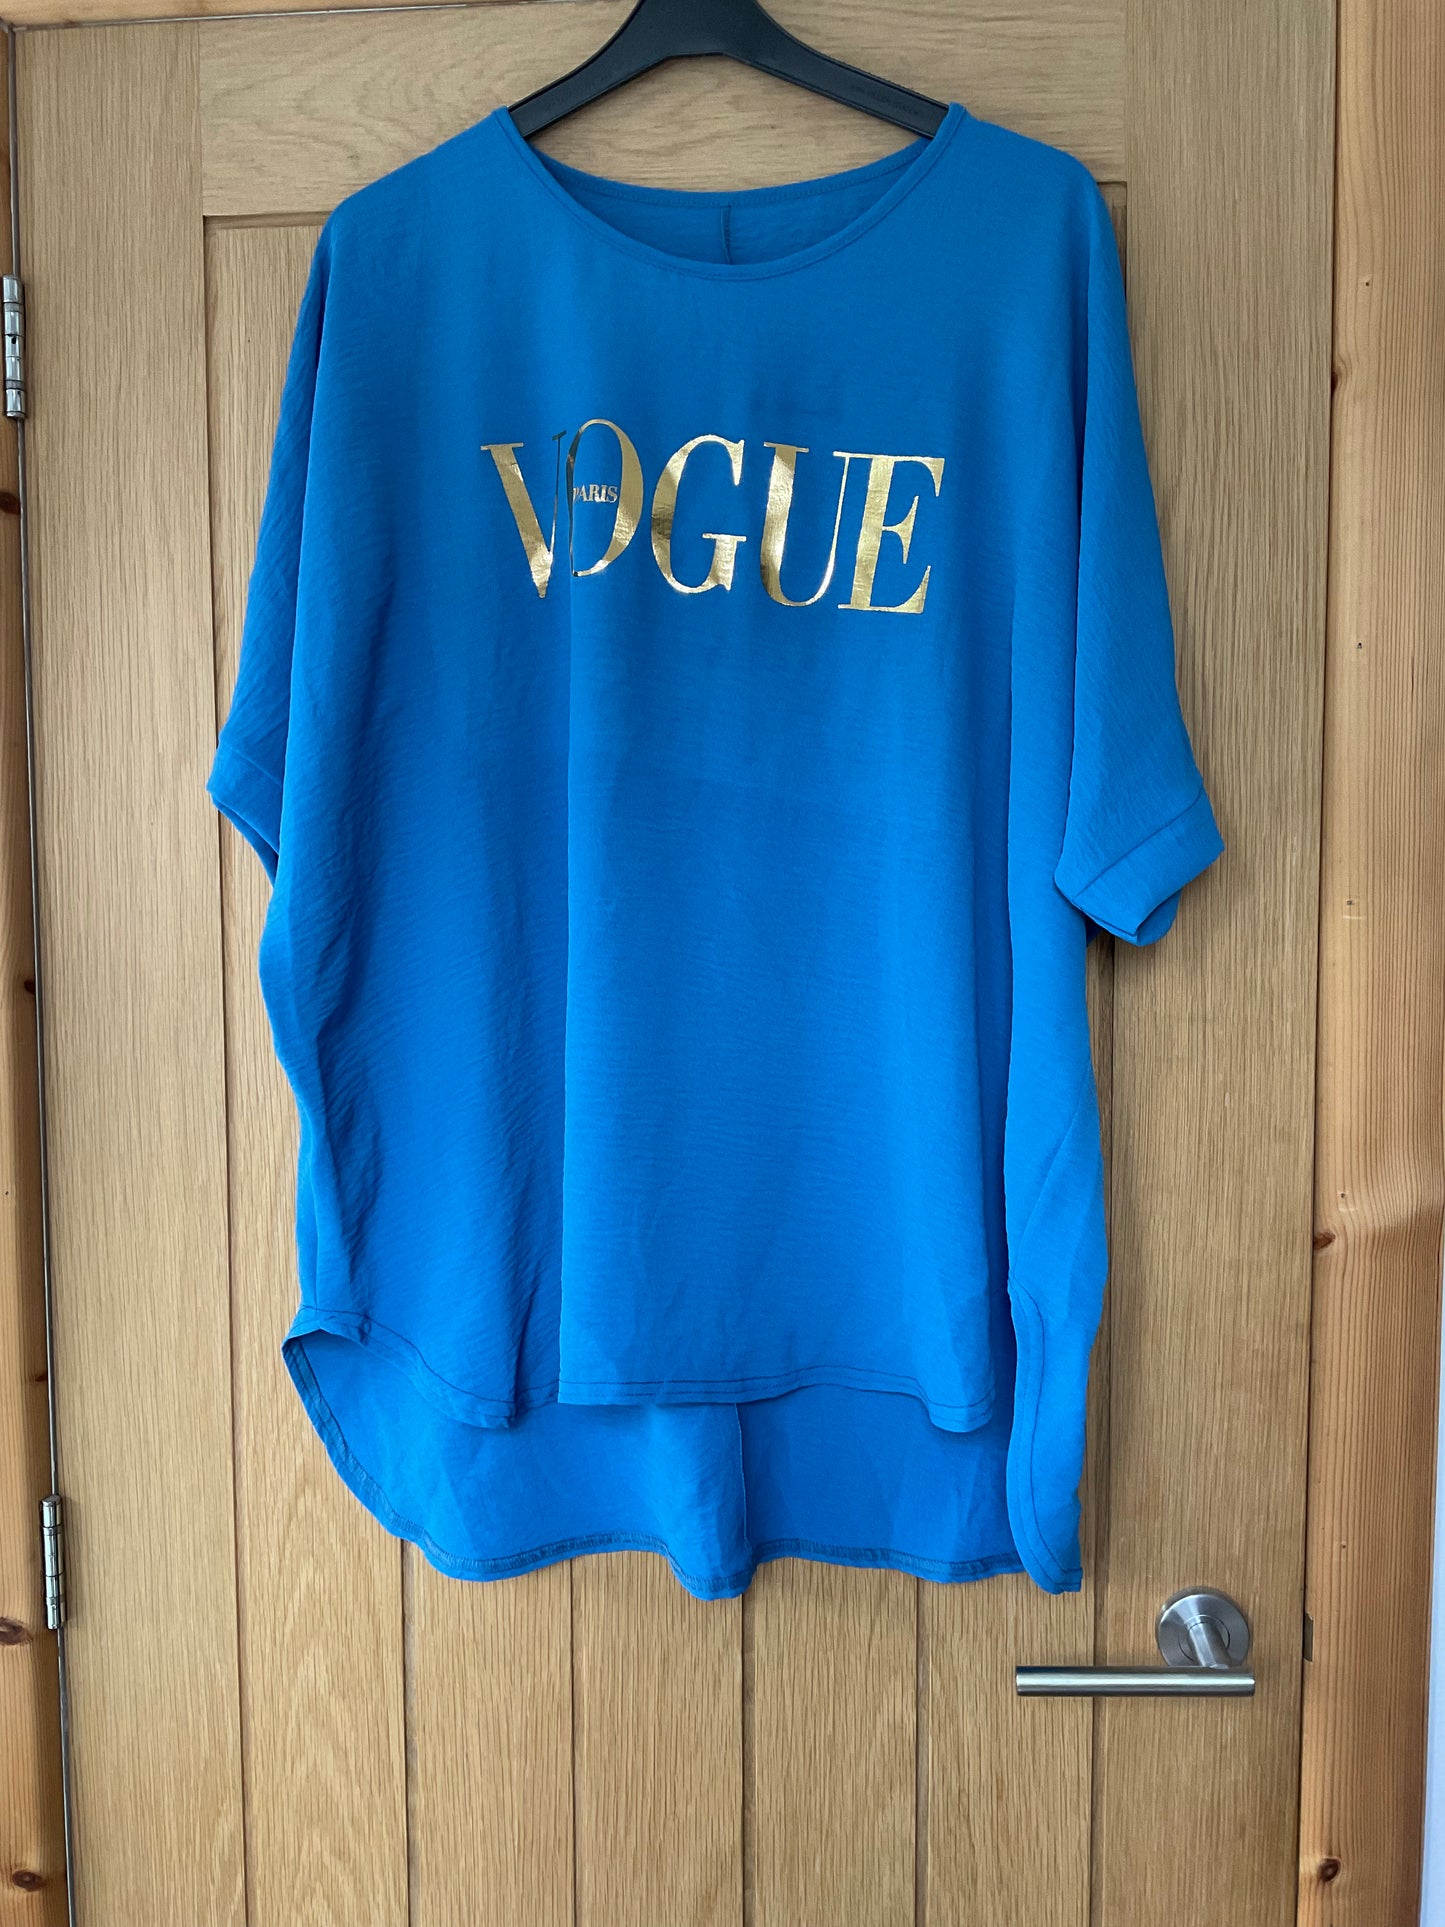 Blue Vogue top